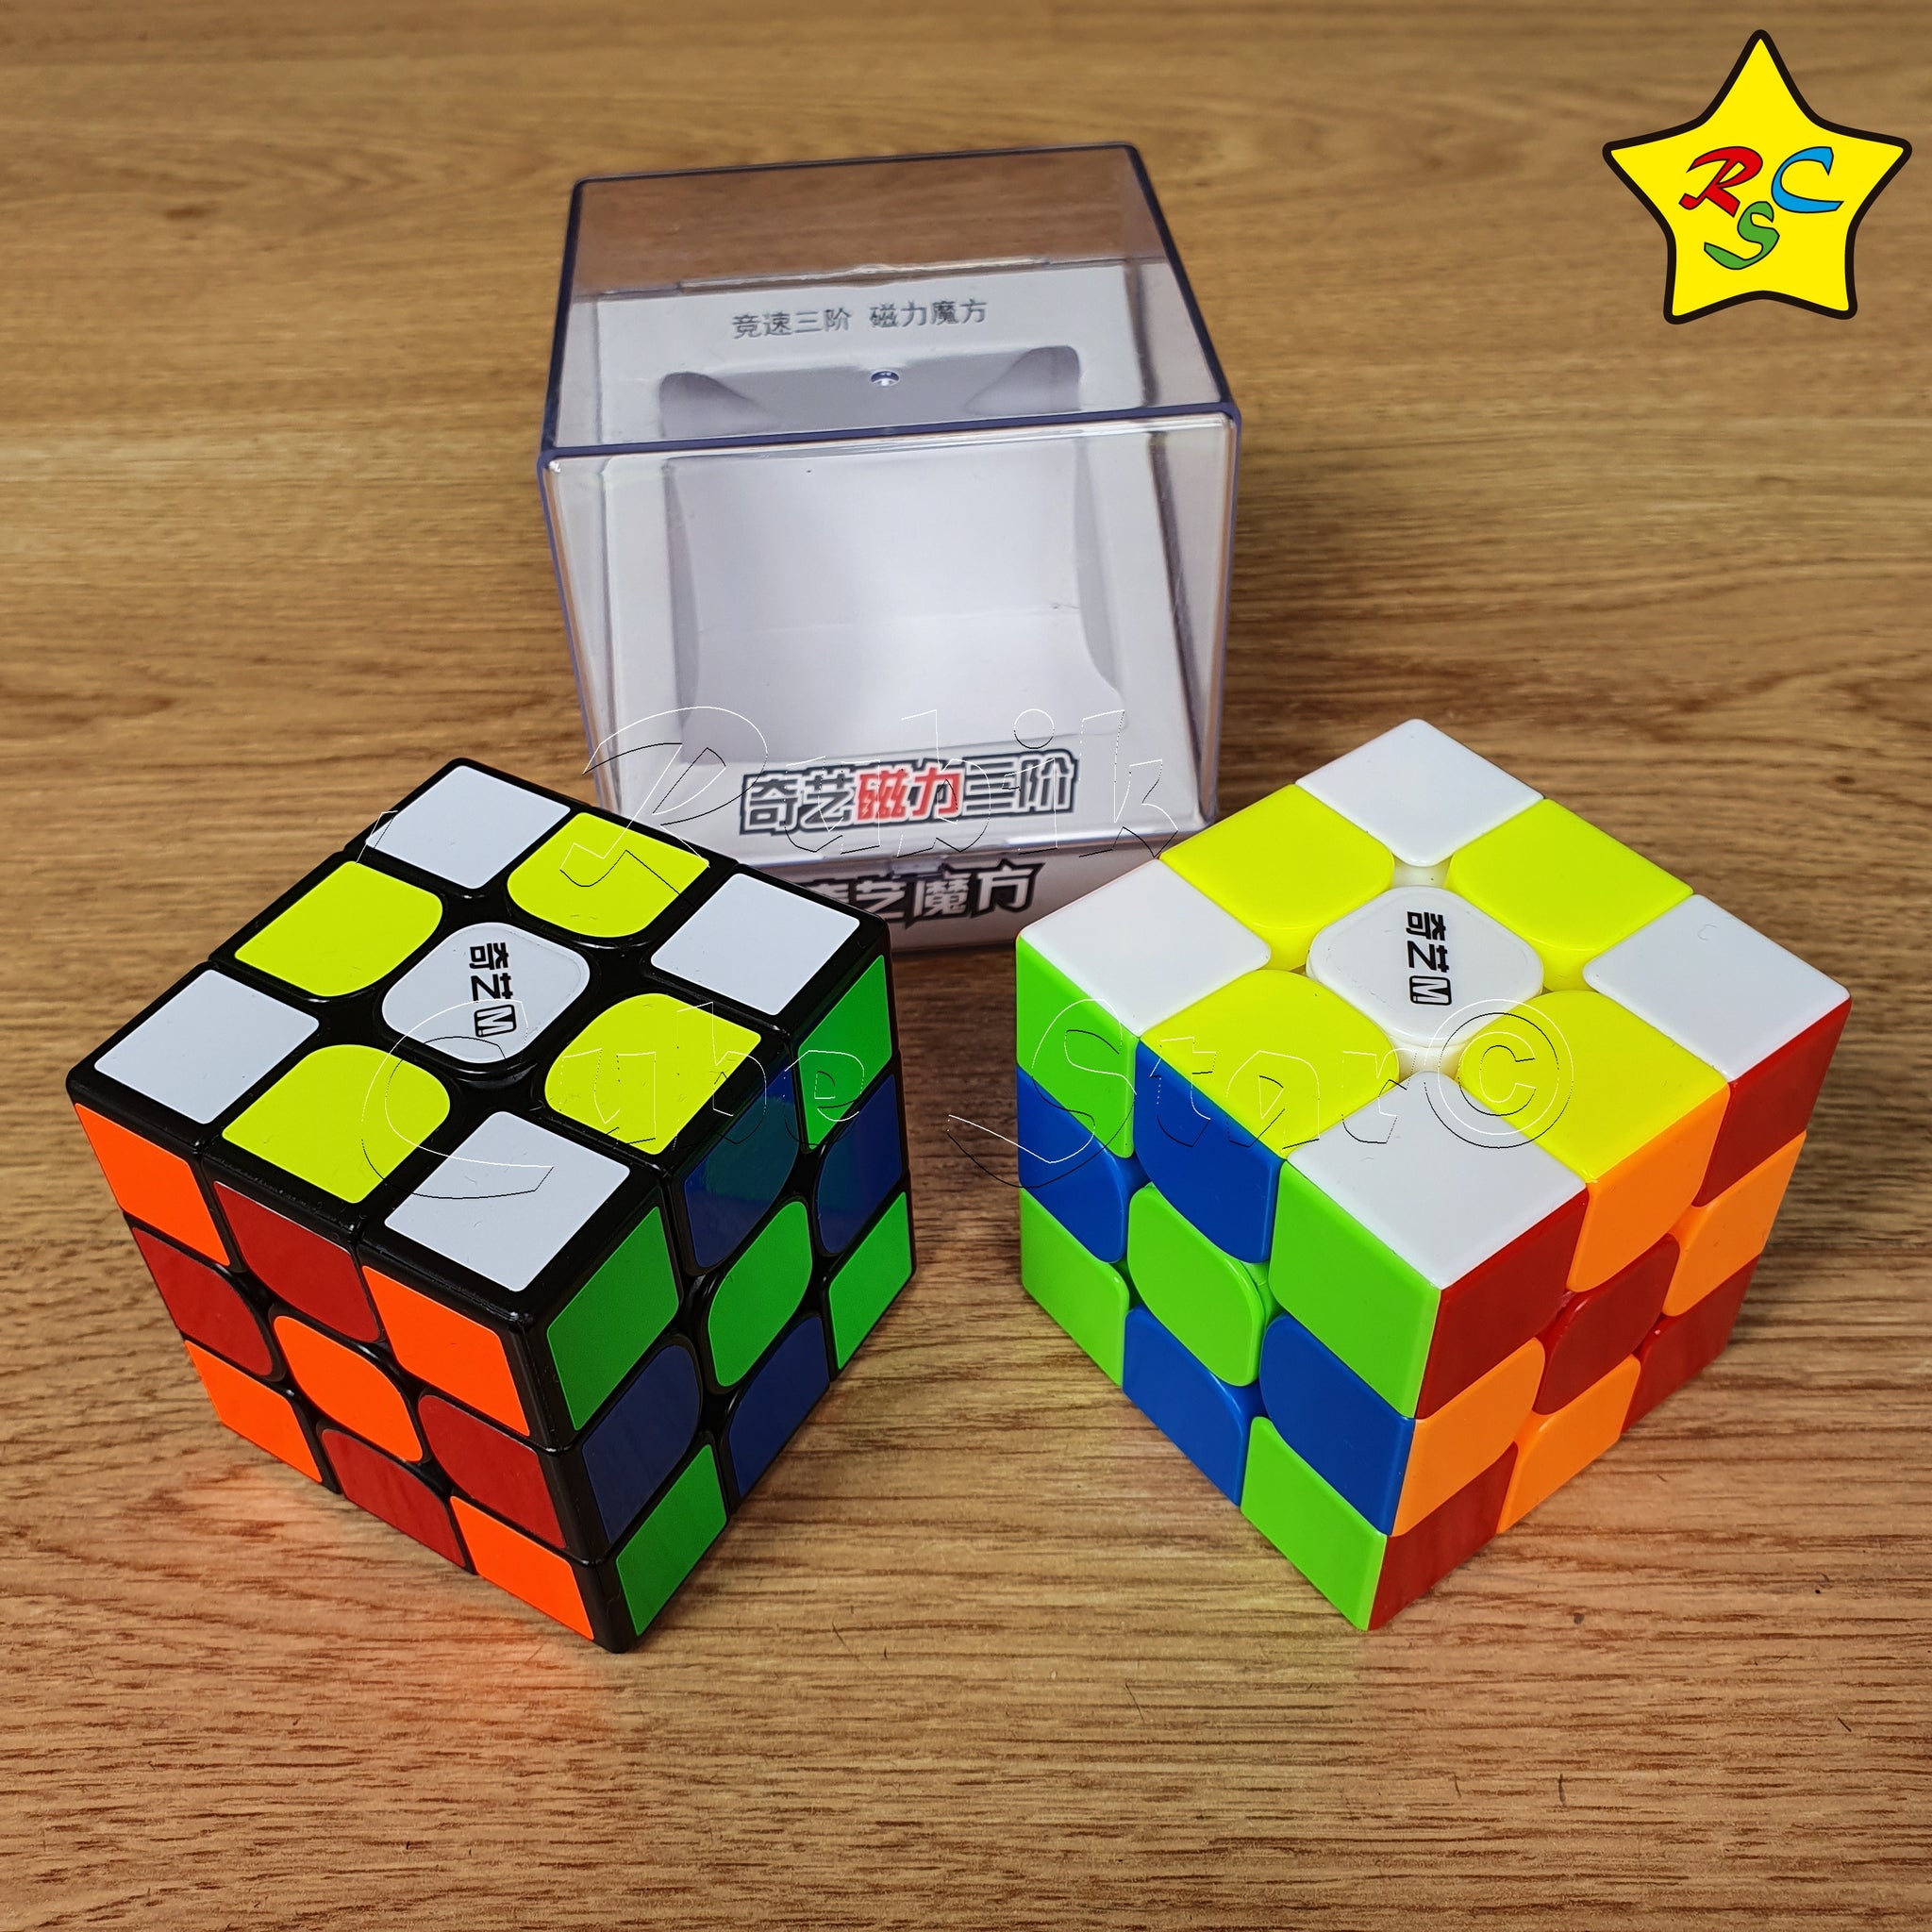 Cubo Mágico 3x3x3 Qiyi MS Preto - Magnético - Oncube: os melhores cubos  mágicos você encontra aqui